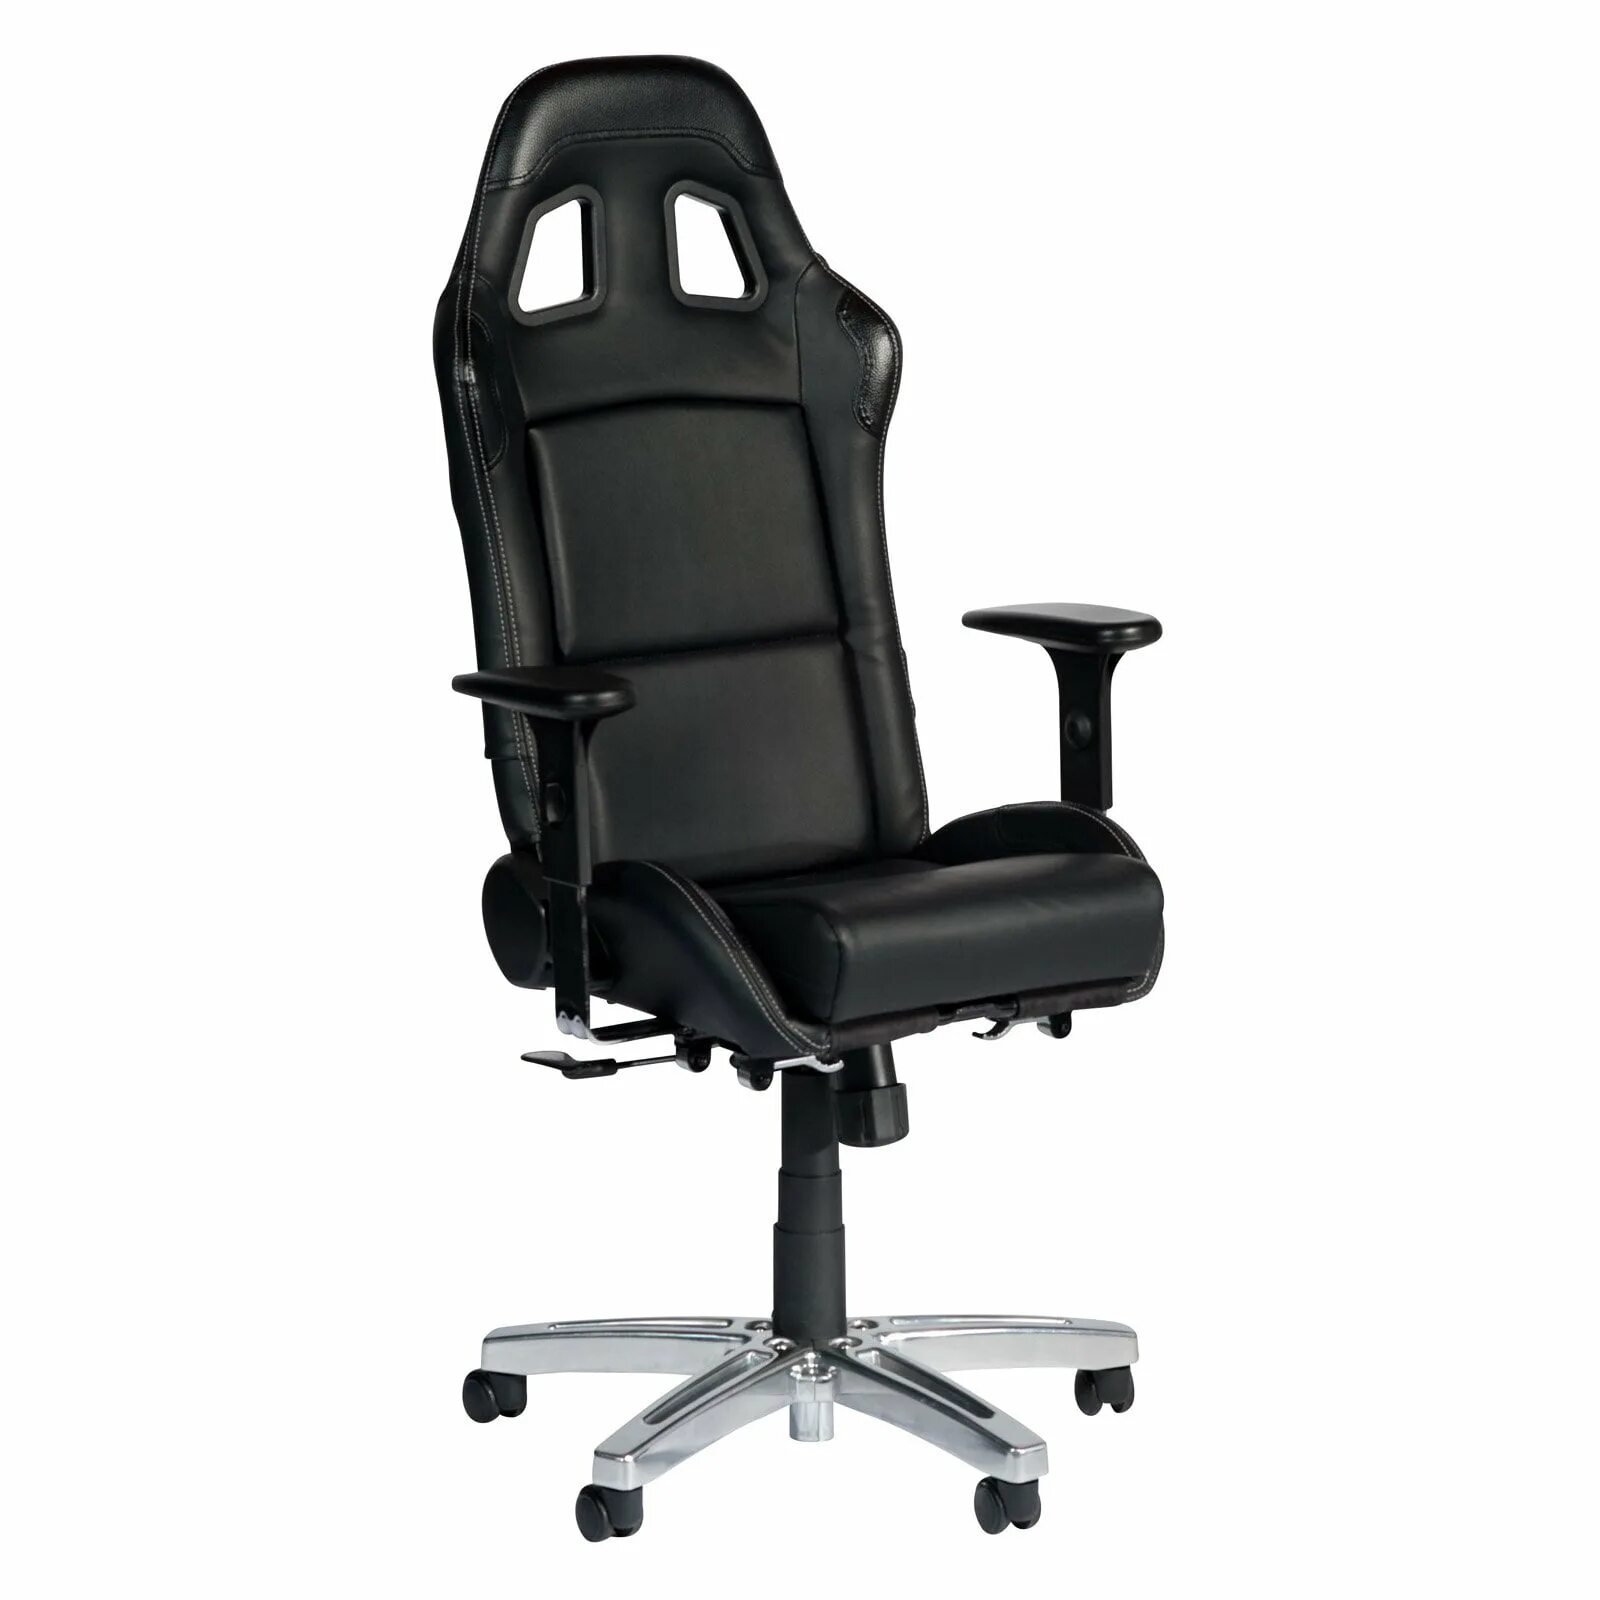 Кресло офисное kobor. Ch 320 Энтер кресло. Игровое компьютерное кресло Playseat. Стул офисный. Компьютерное кресло (офисное).